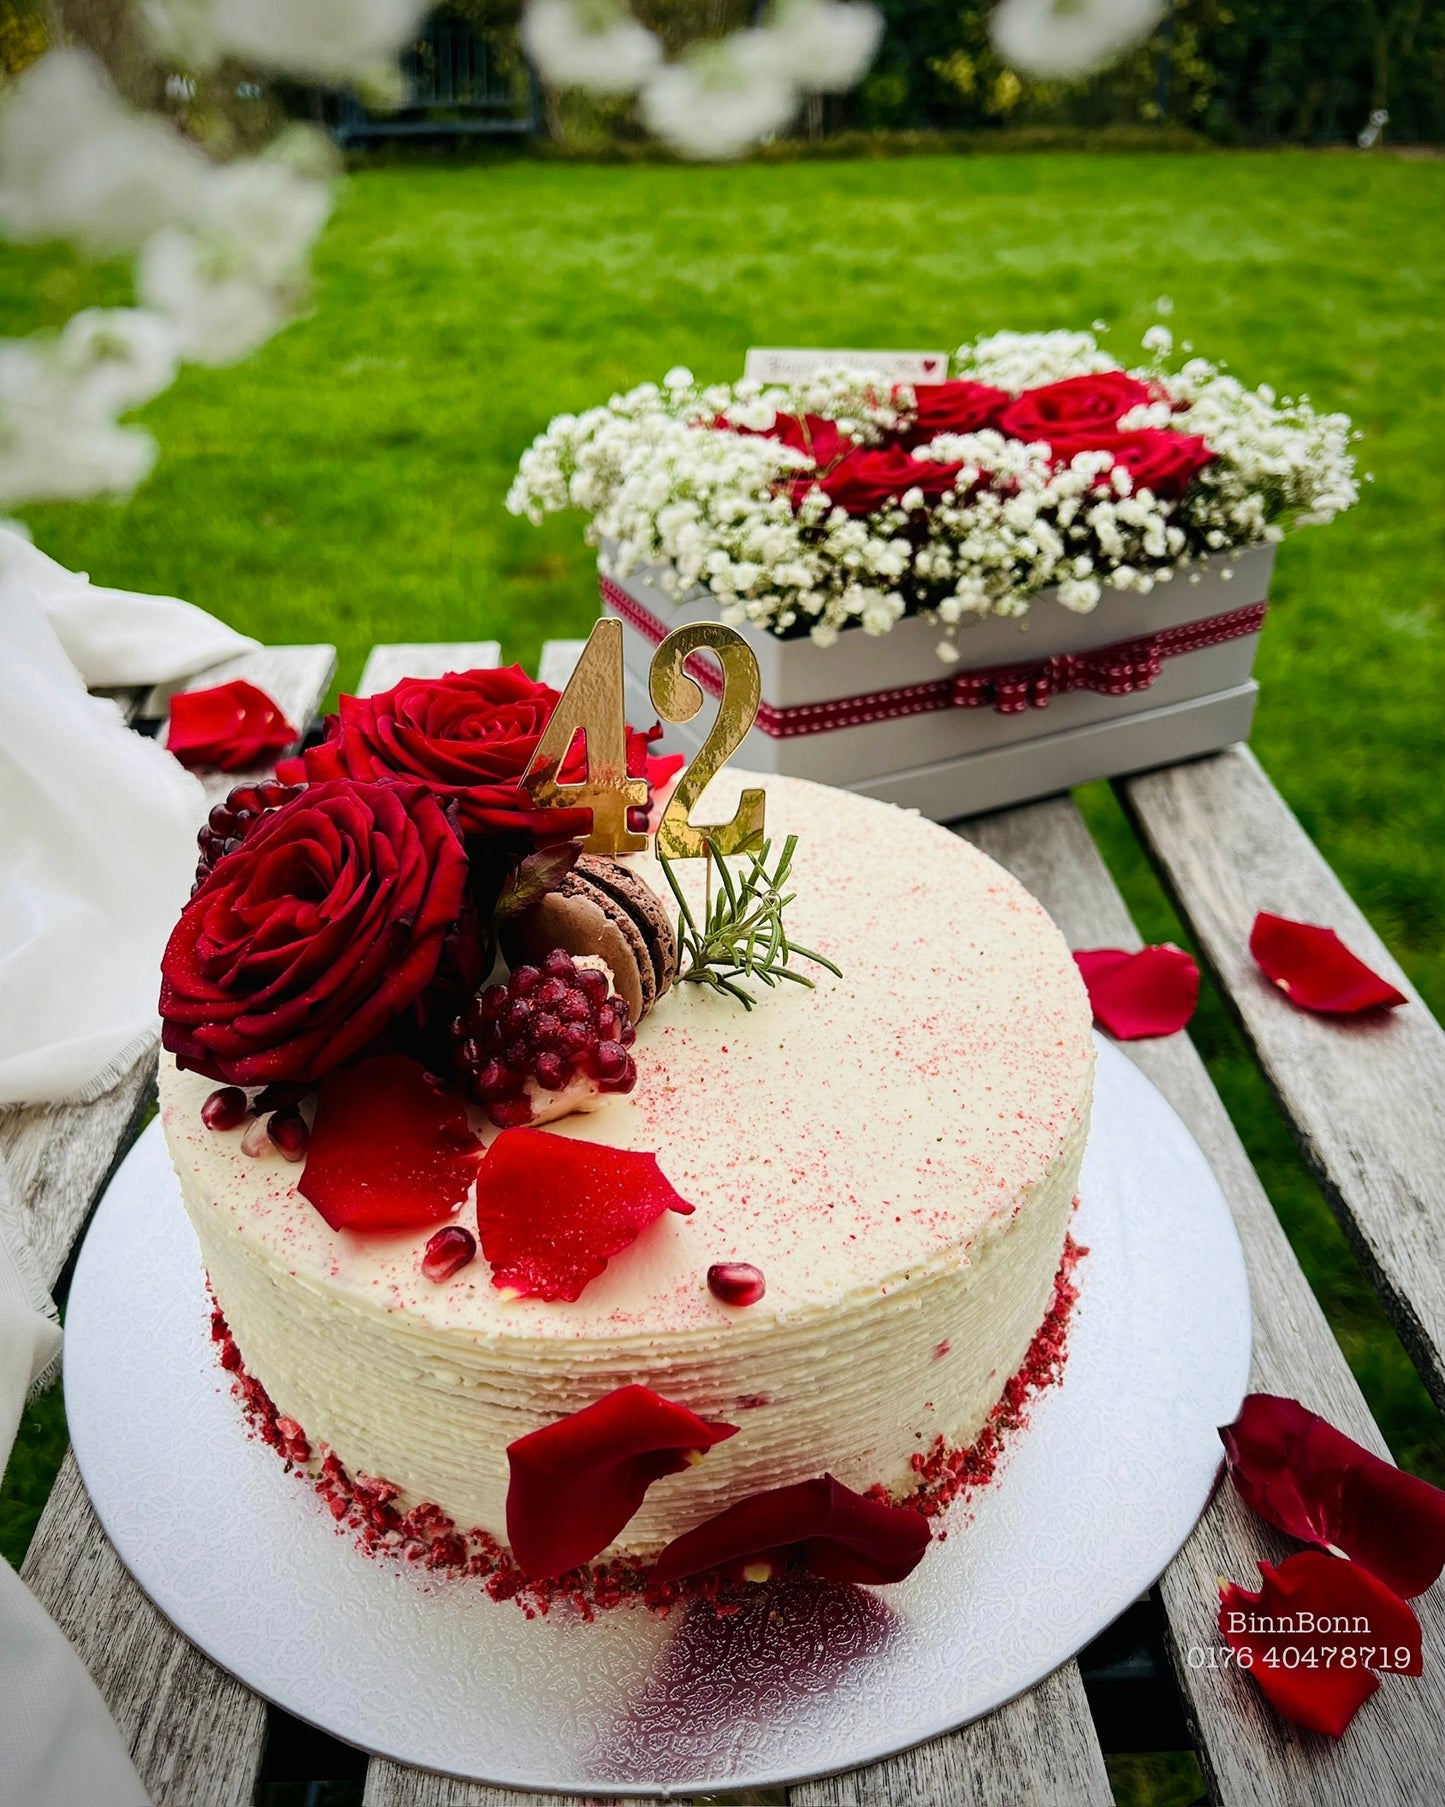 11. Torte "True Love" mit frischen Rosen, Granatapfel und Frischkäse-Sahnecreme 22 cm